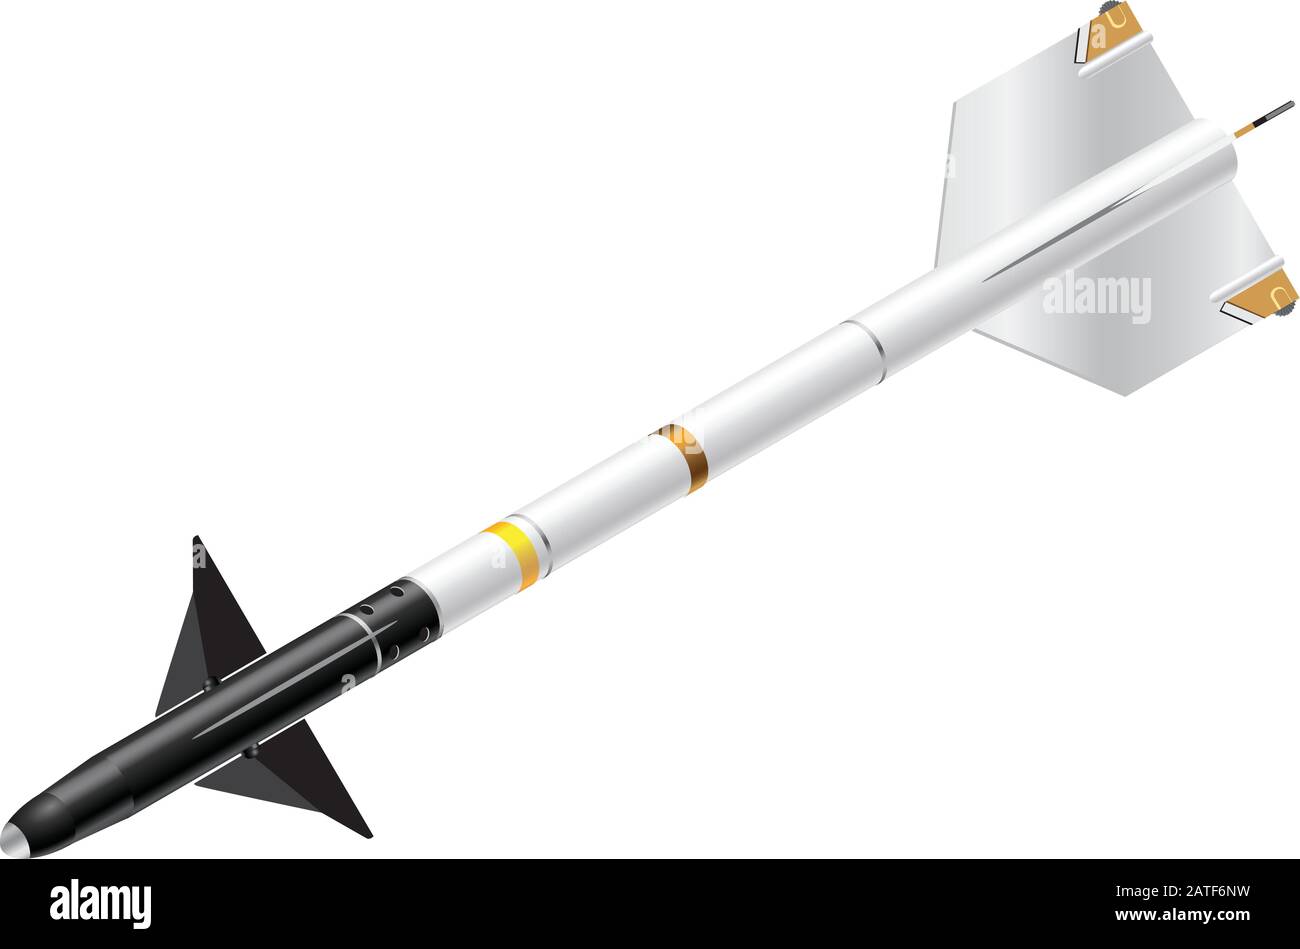 Illustrazione Vettoriale Isometrica Dettagliata Di Un Missile Sidewinder Illustrazione Vettoriale